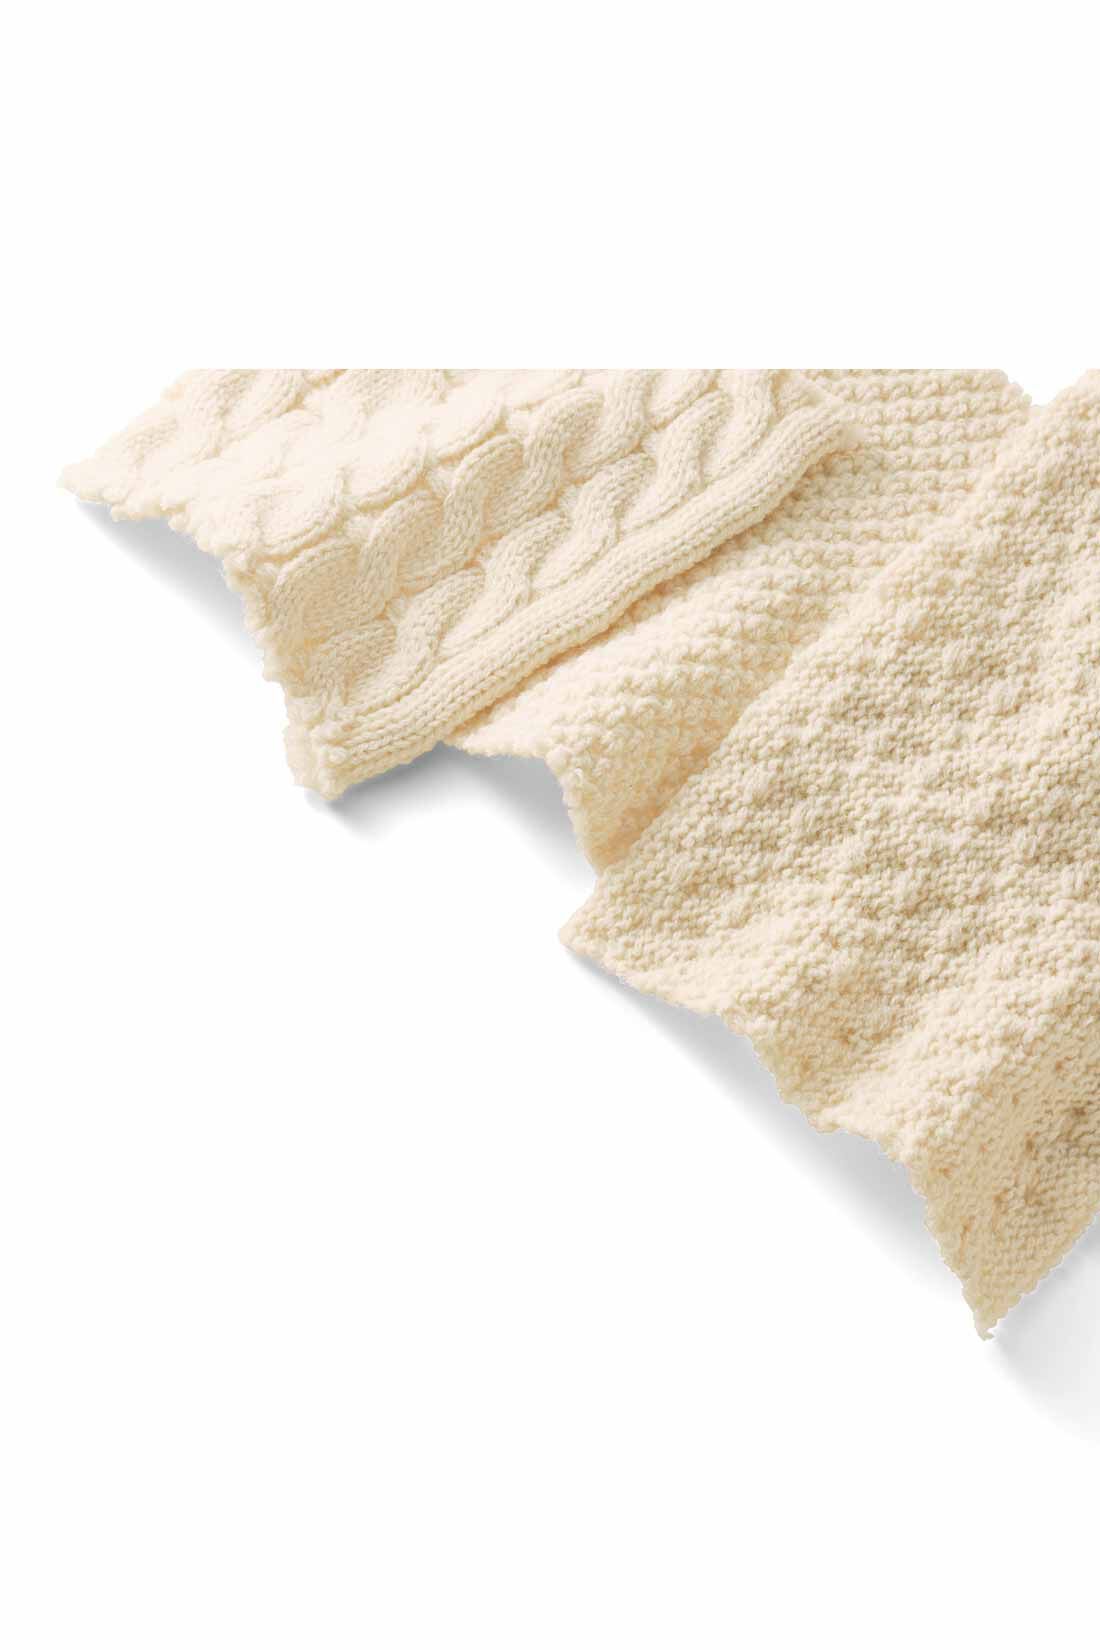 MEDE19F|MEDE19F　リメイク風ニットスカート〈アイボリー〉|毛混で暖かみがあり、ケーブルや模様編みが立体的に際立つ糸をセレクトしました。